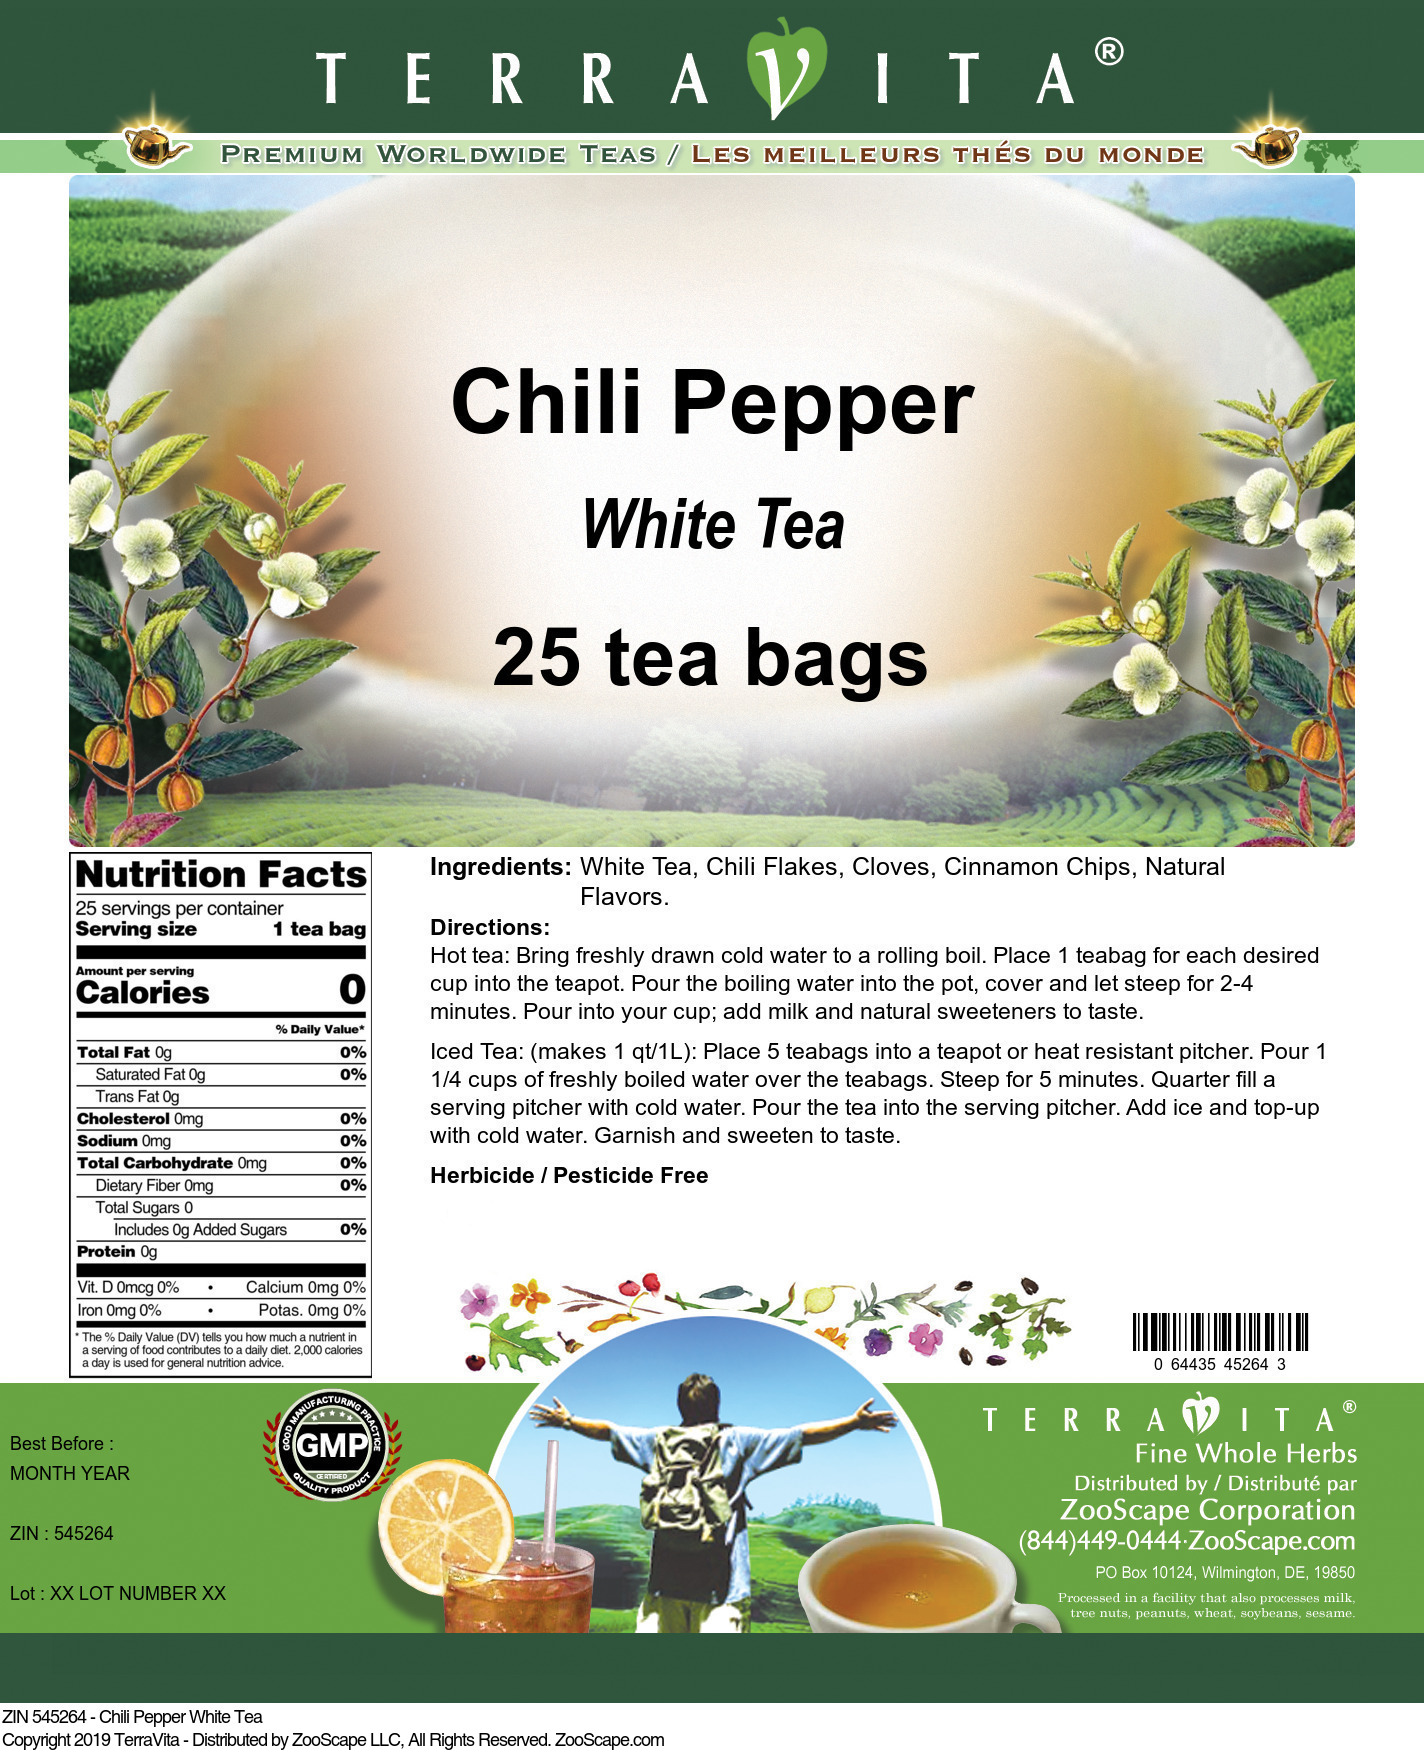 Chili Pepper White Tea - Label